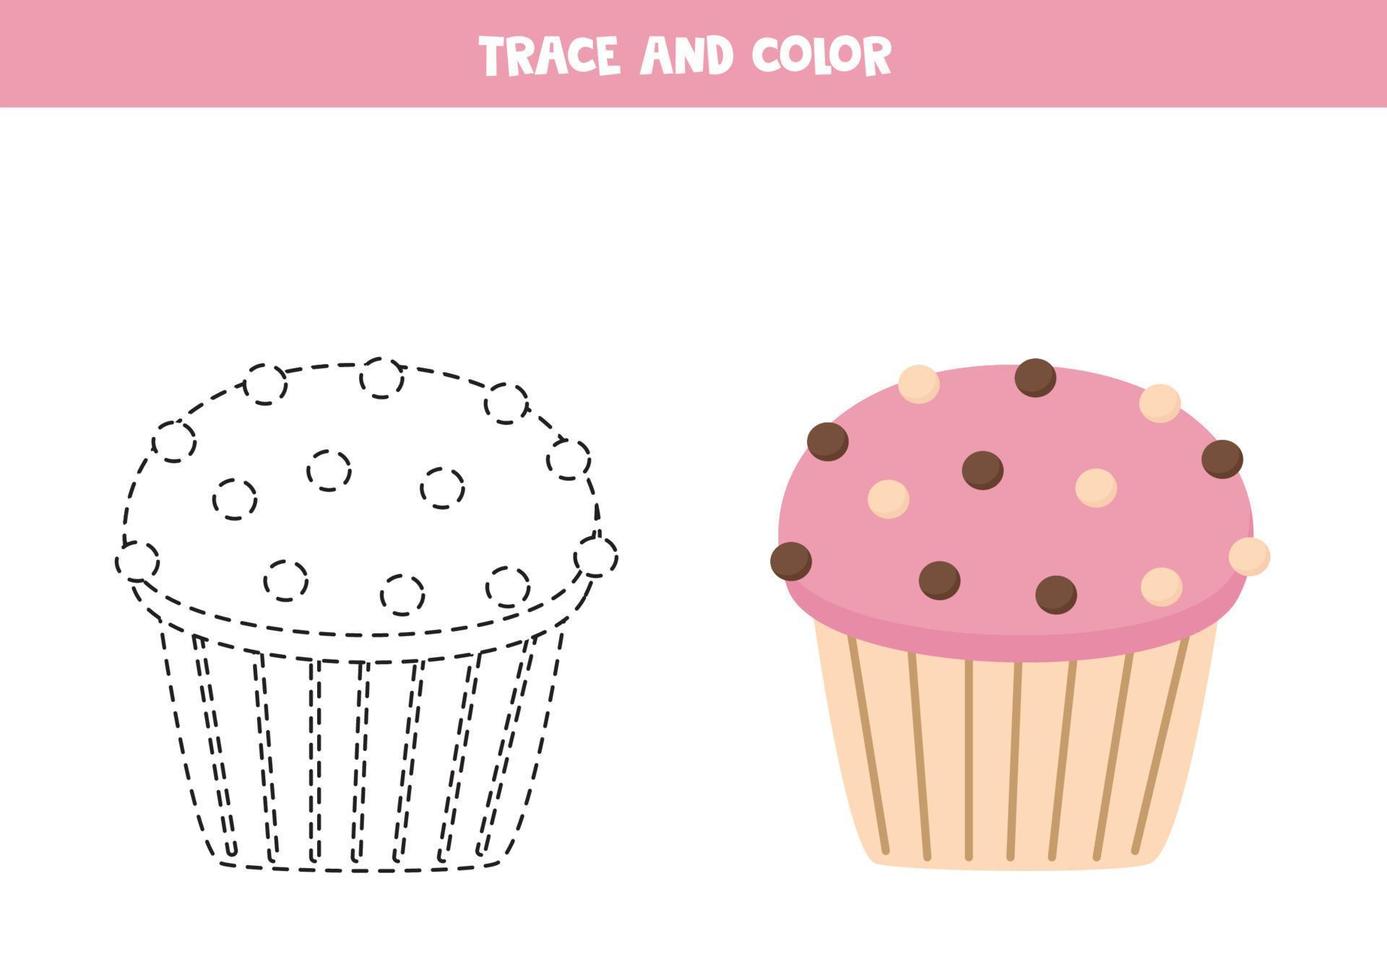 trace e colore o cupcake dos desenhos animados. planilha para crianças. vetor